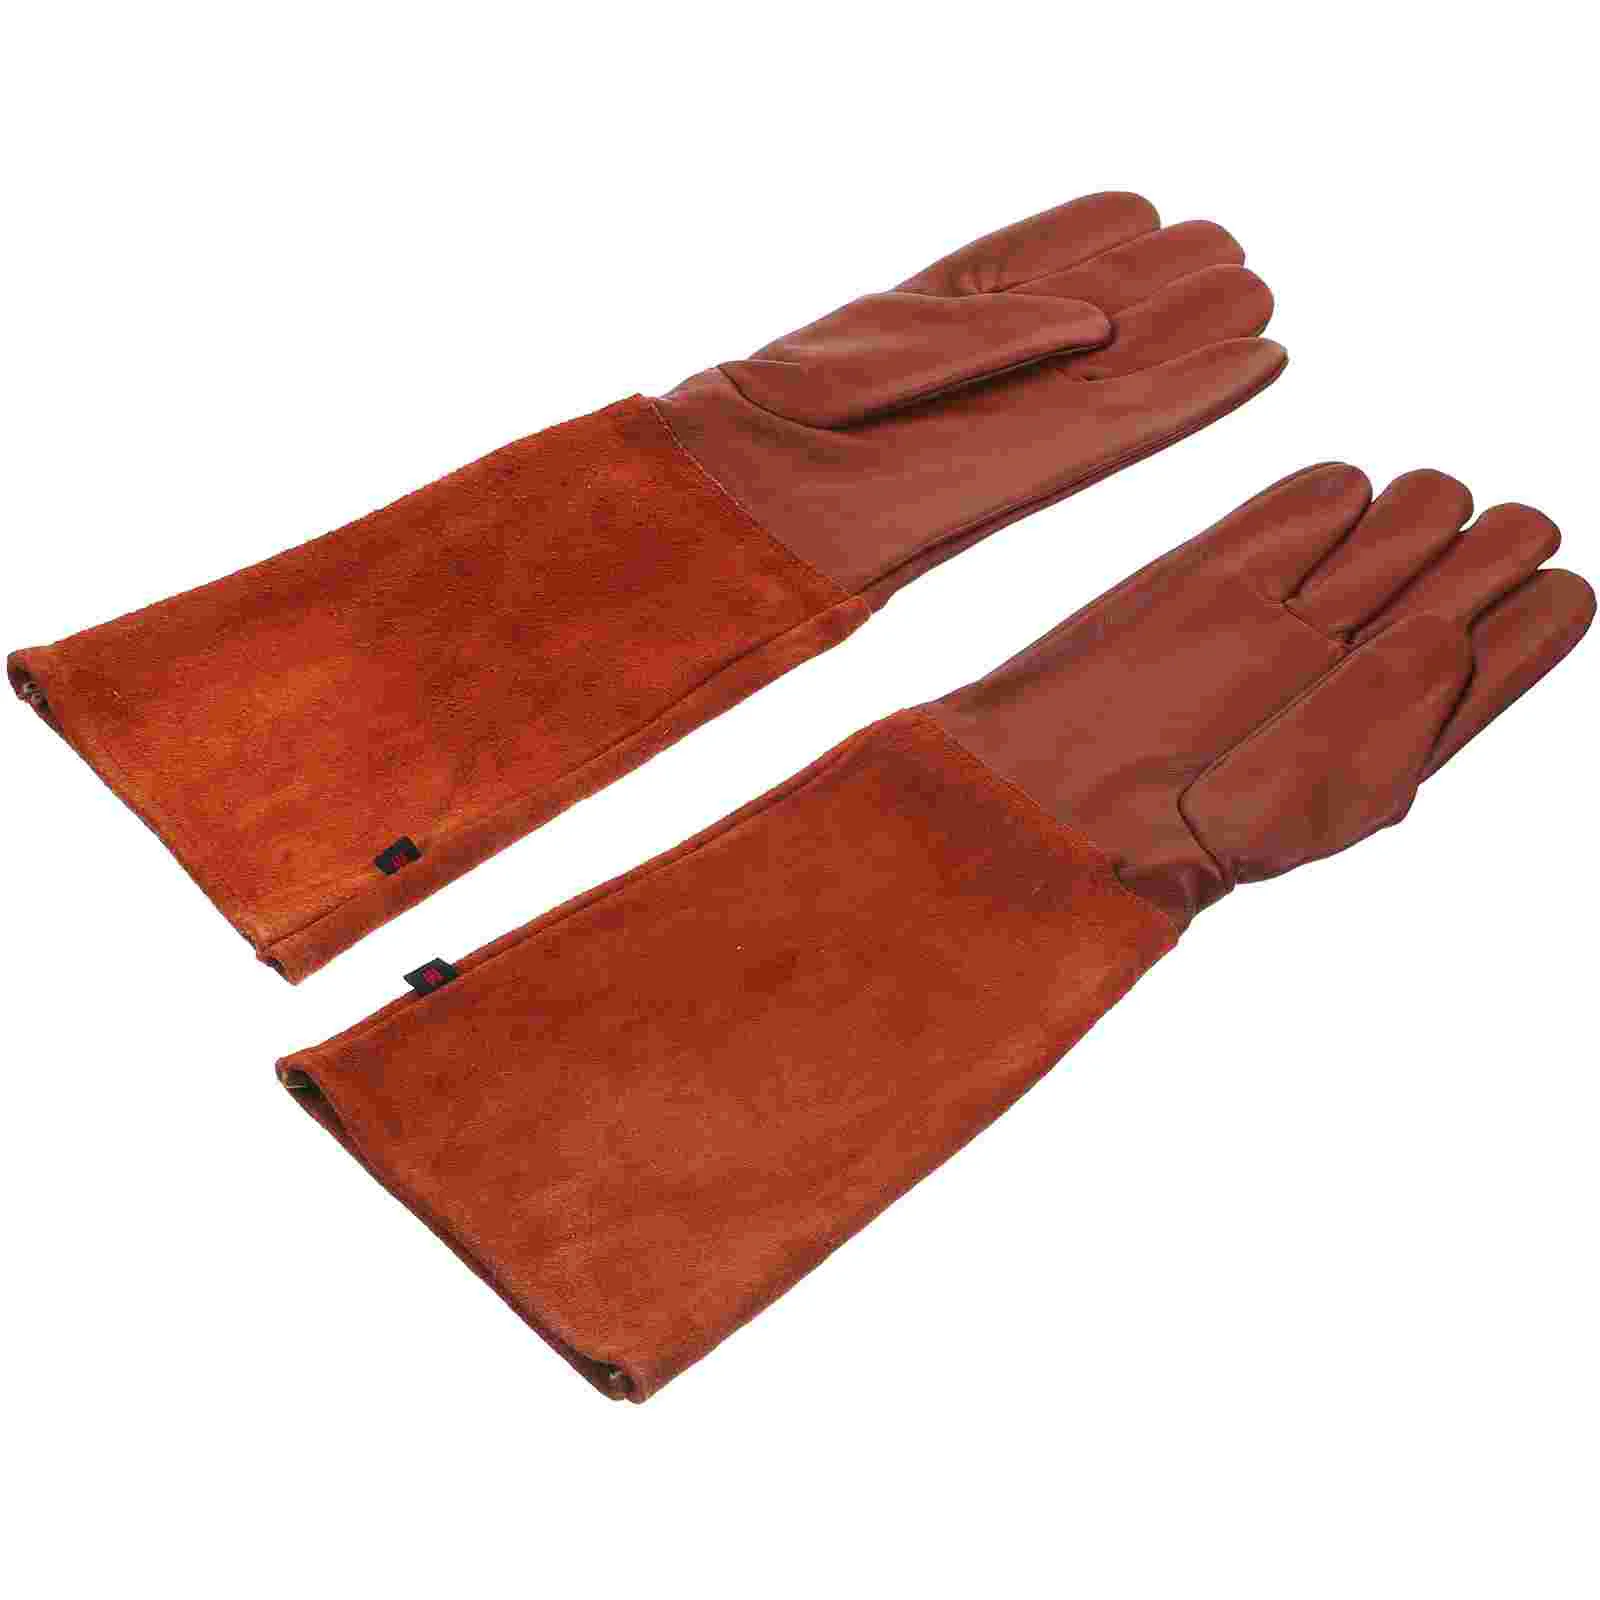 

Садовые перчатки, наружные обрезные рабочие защитные износостойкие перчатки для посадки и обрезки кактусов